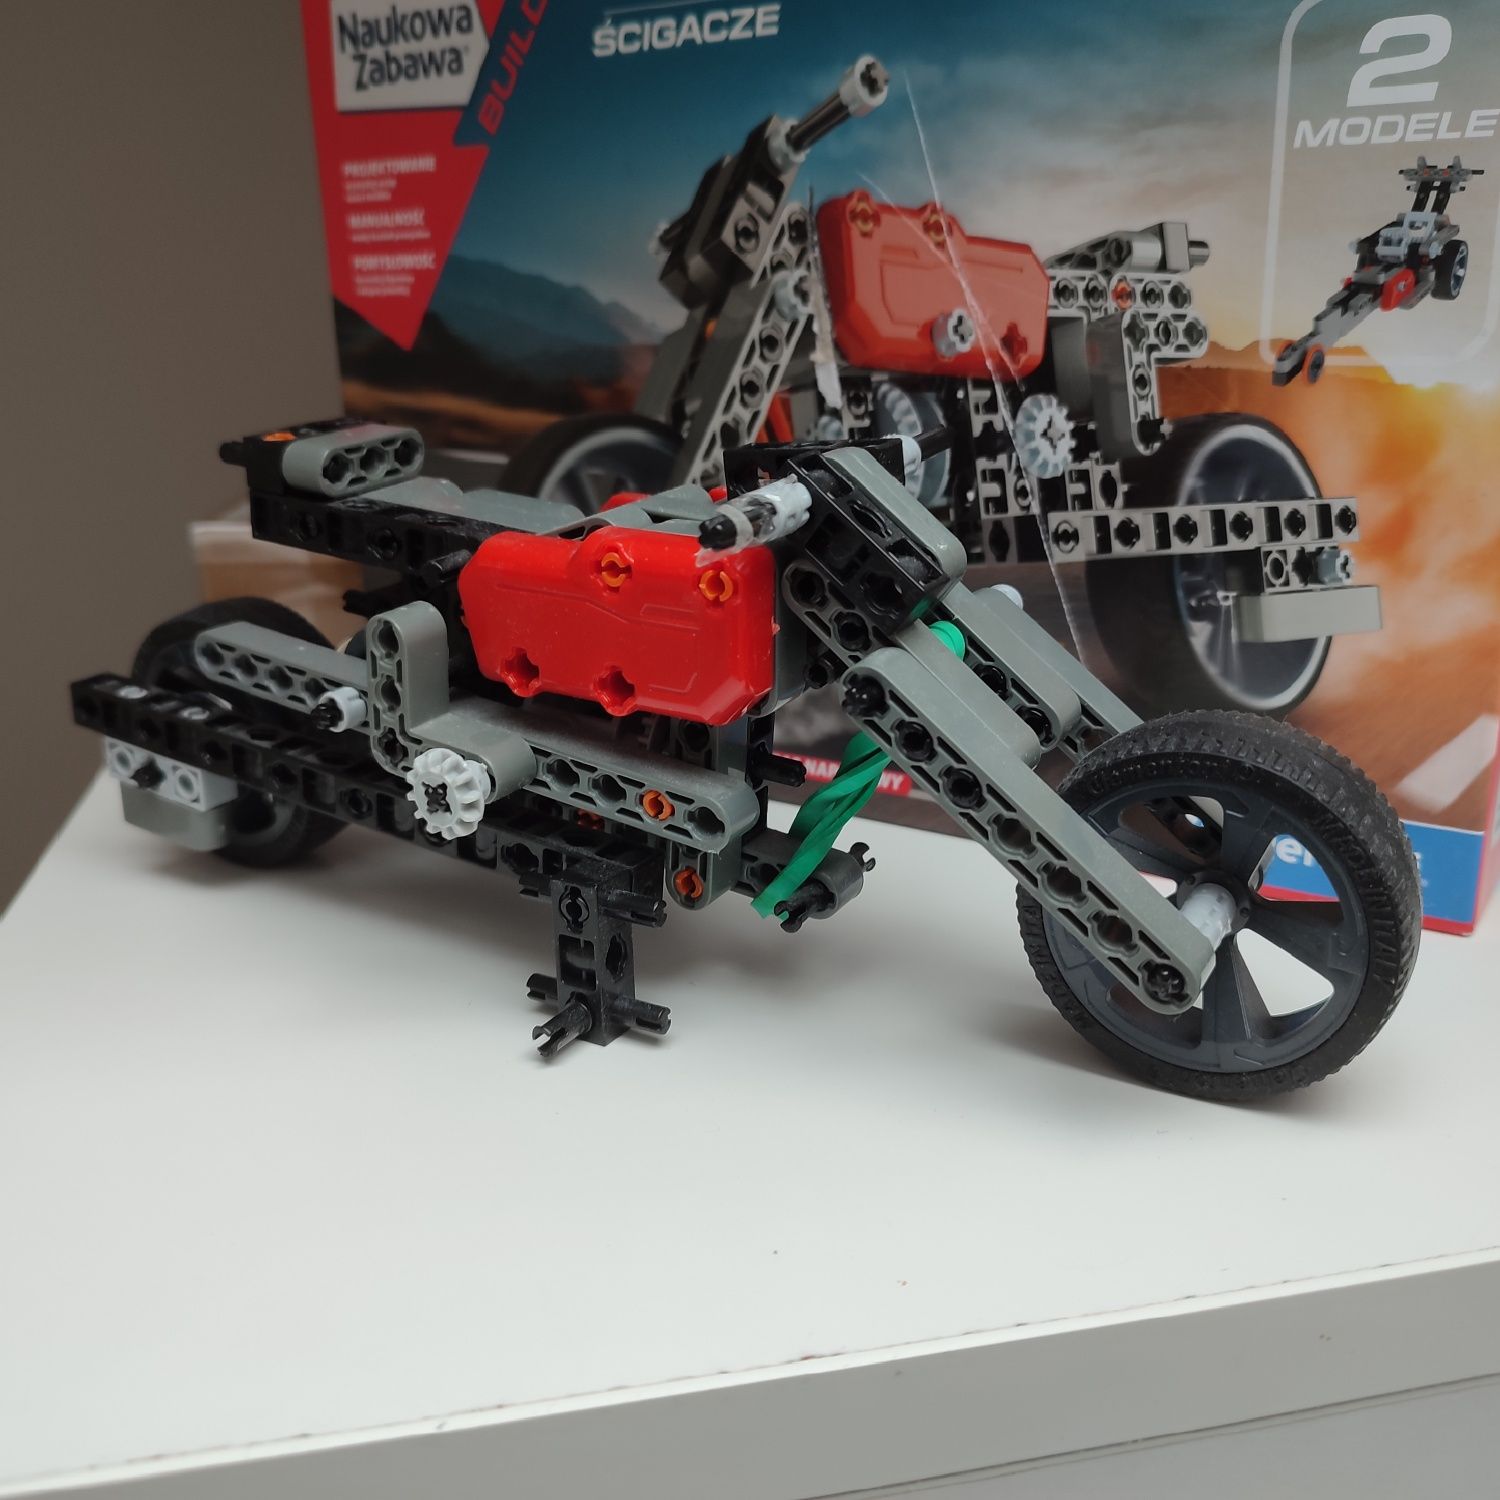 Ścigacze do złożenia motocykle Naukowa Zabawa Mechanics 2 modele